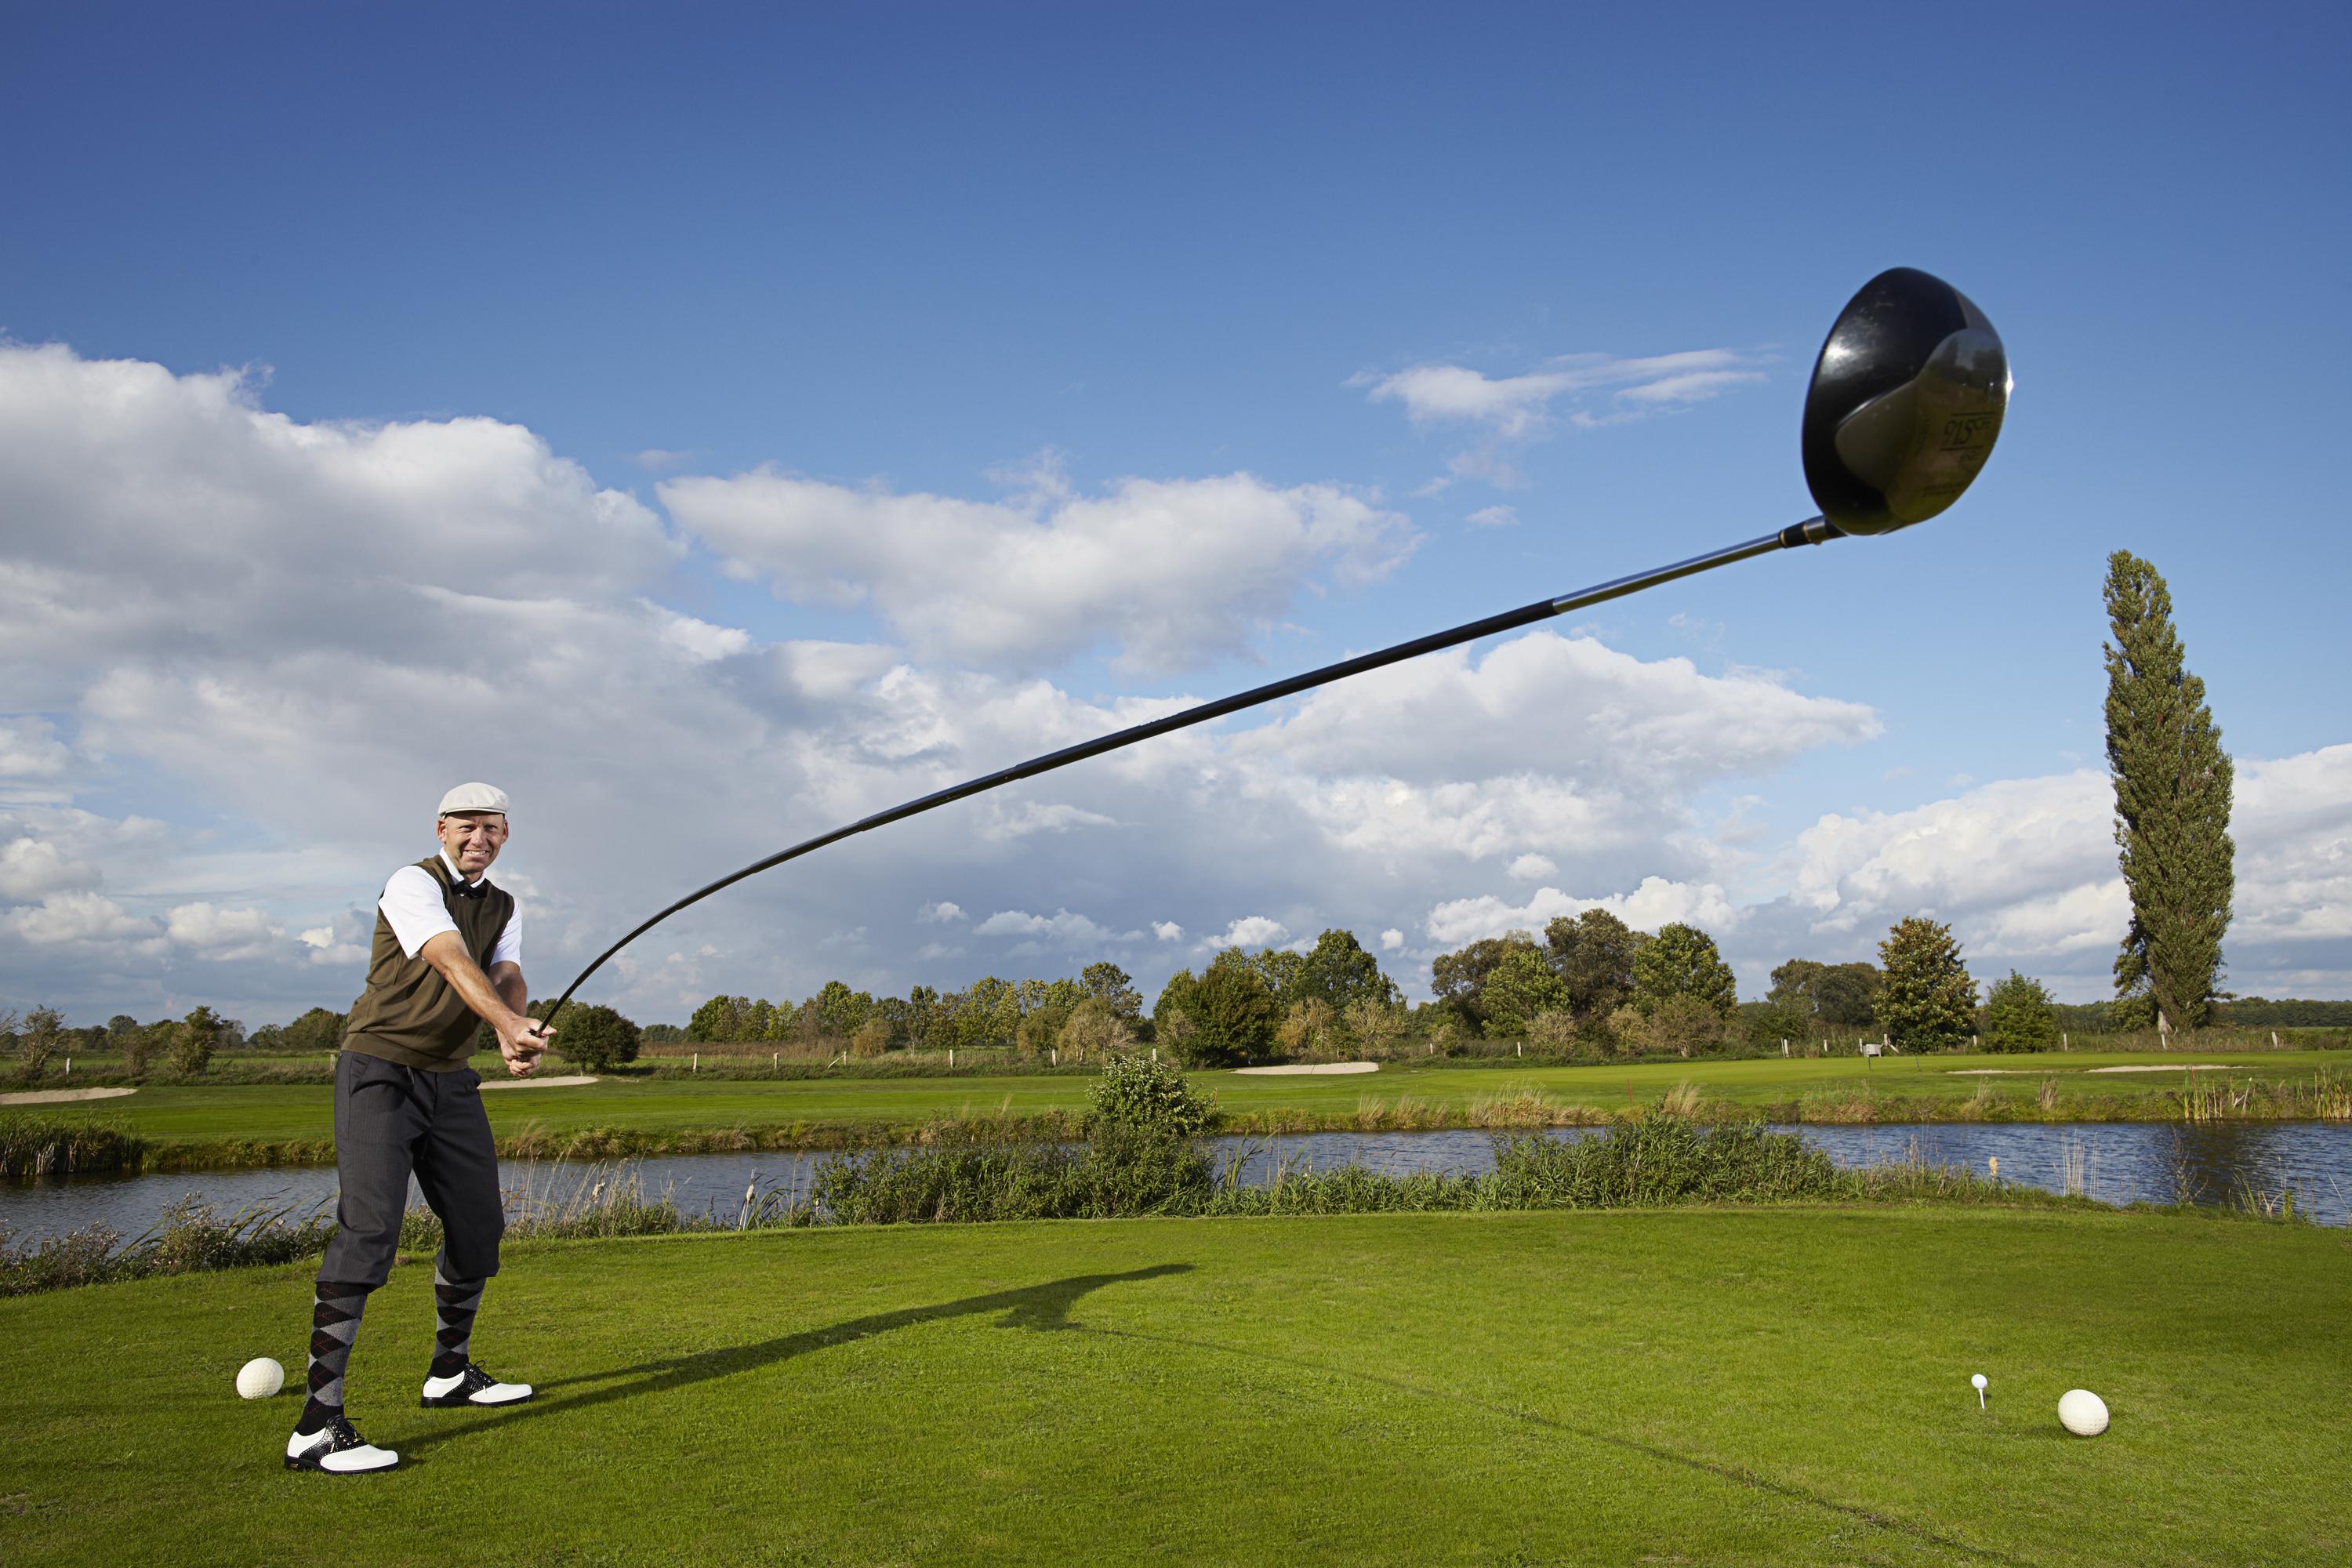 
La più lunga mazza da golf del mondo - Karsten Maas, 49 anni, danese, entra nel libro che consacra i record per aver creato la più lunga mazza da golf del mondo utilizzabile. Misura 4.37 metri di lunghezza ed è stata usata per lanciare una palla ad una distanza di 165.46 metri presso il 'Golf in Wall' a Wall, Germania. Karsten, professionista del golf e 'Trick Golf Artist', dice che anche se è fiero della sua mazza da record, non ci sono grandi chance di vederlo sul green con quella mazza: "Il peso e la lunghezza della mazza rendono il lancio della palla veramente faticoso. E in più io non ho un caddy!".